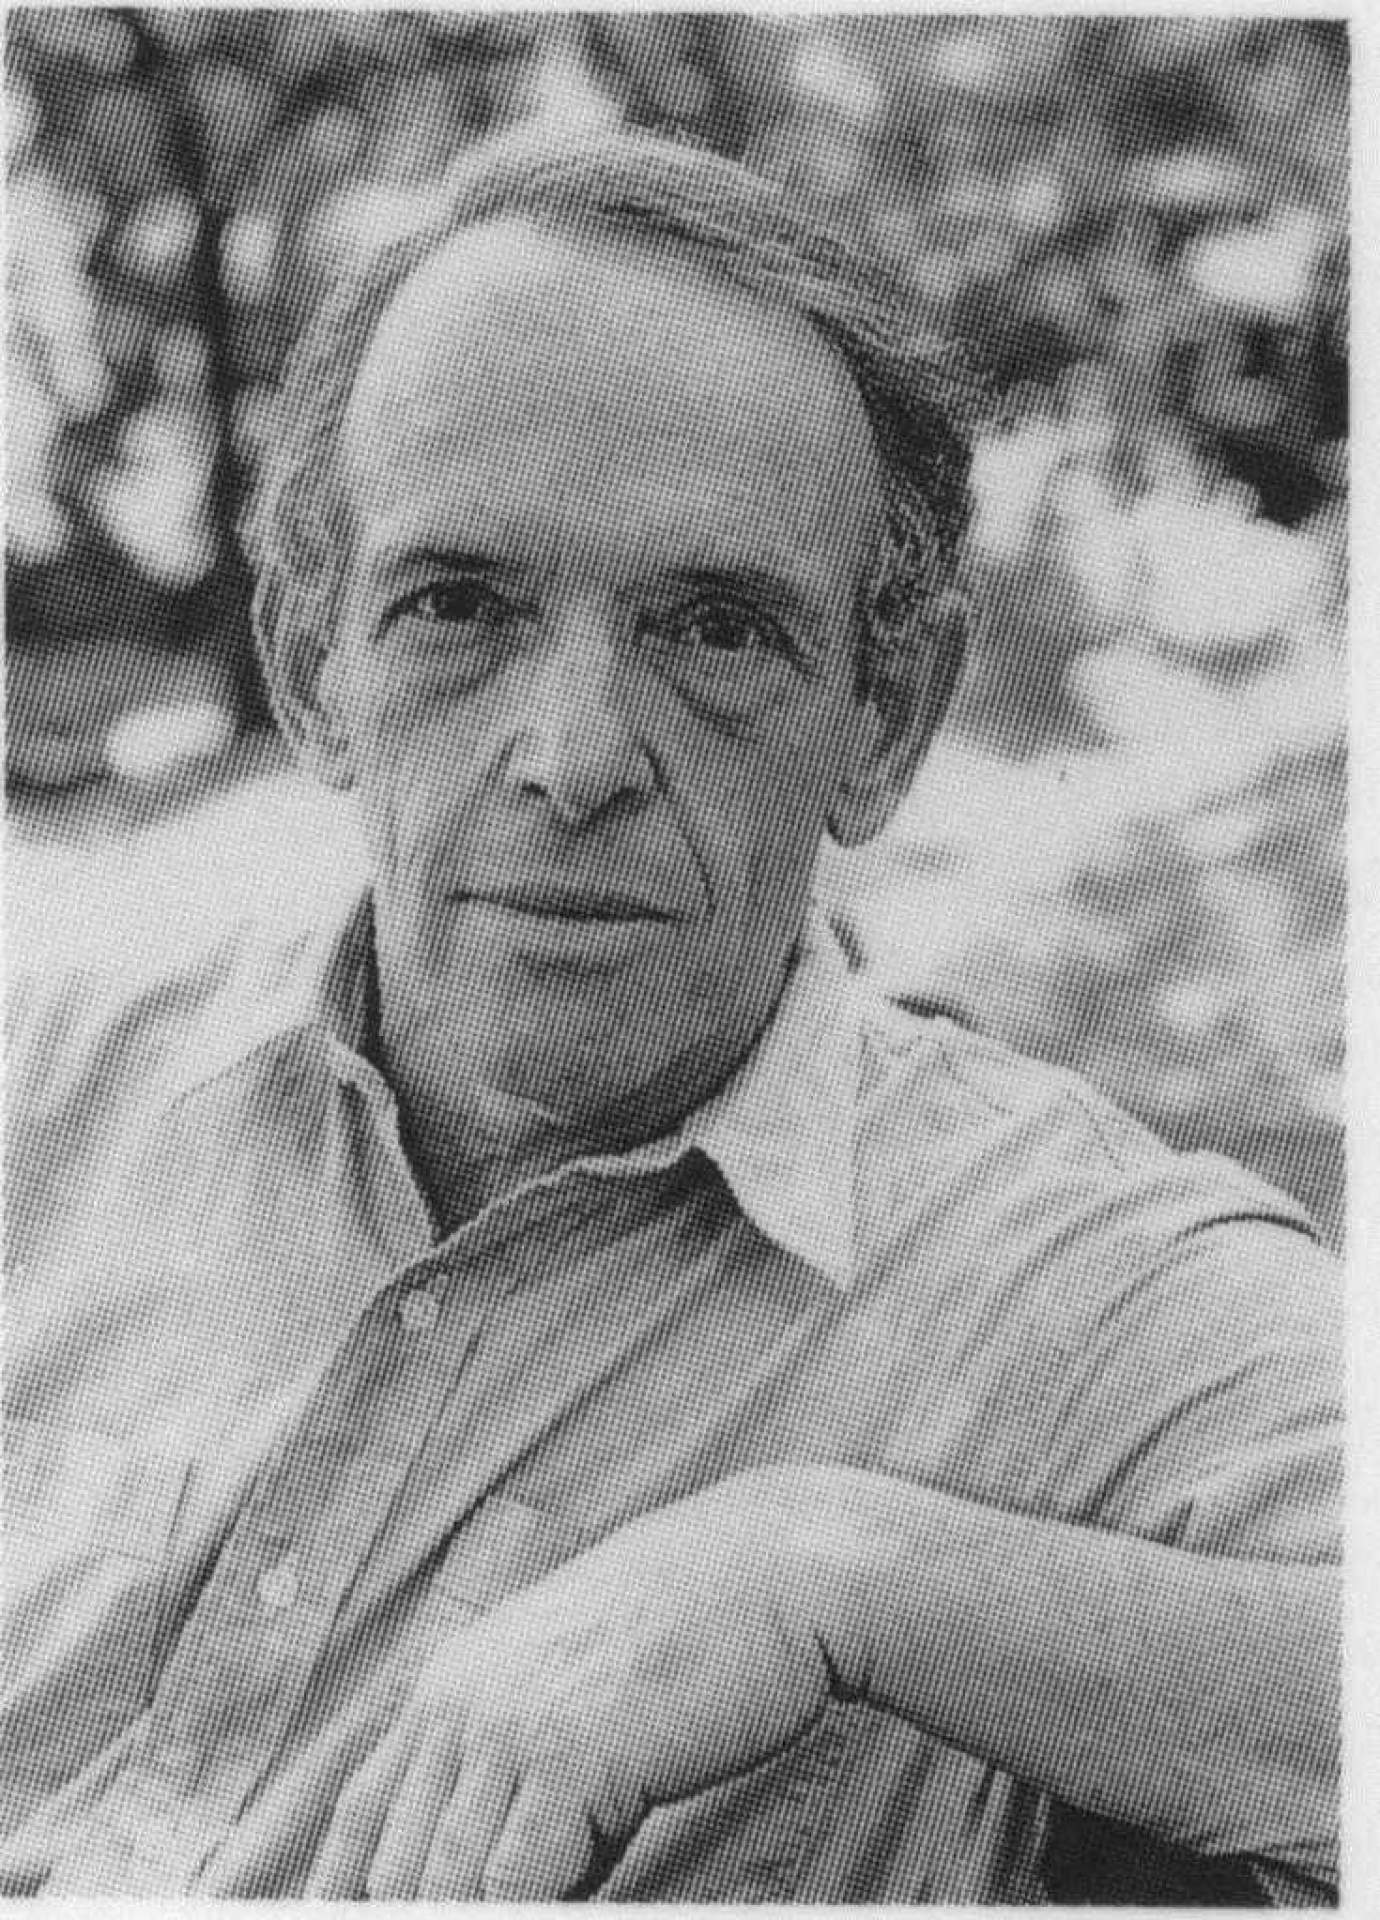 Irving Feldman